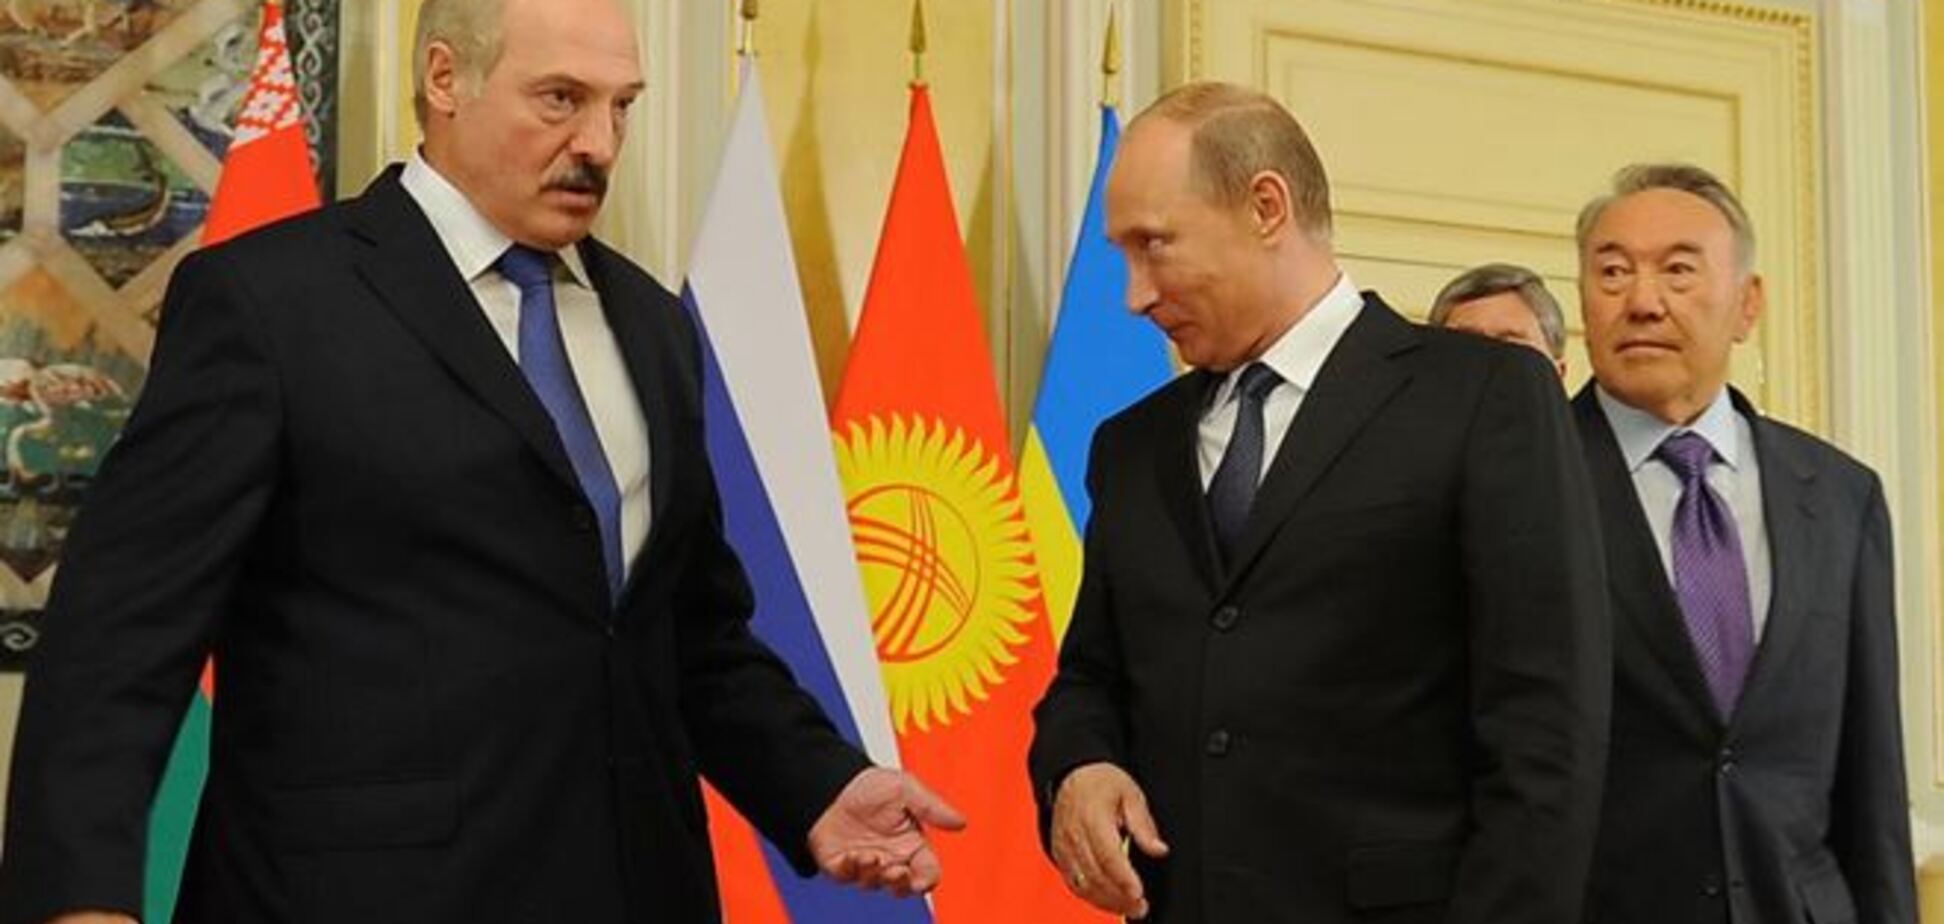 Лукашенко и Назарбаев не оставят своих граждан без 'польских яблок и немецких деликатесов'